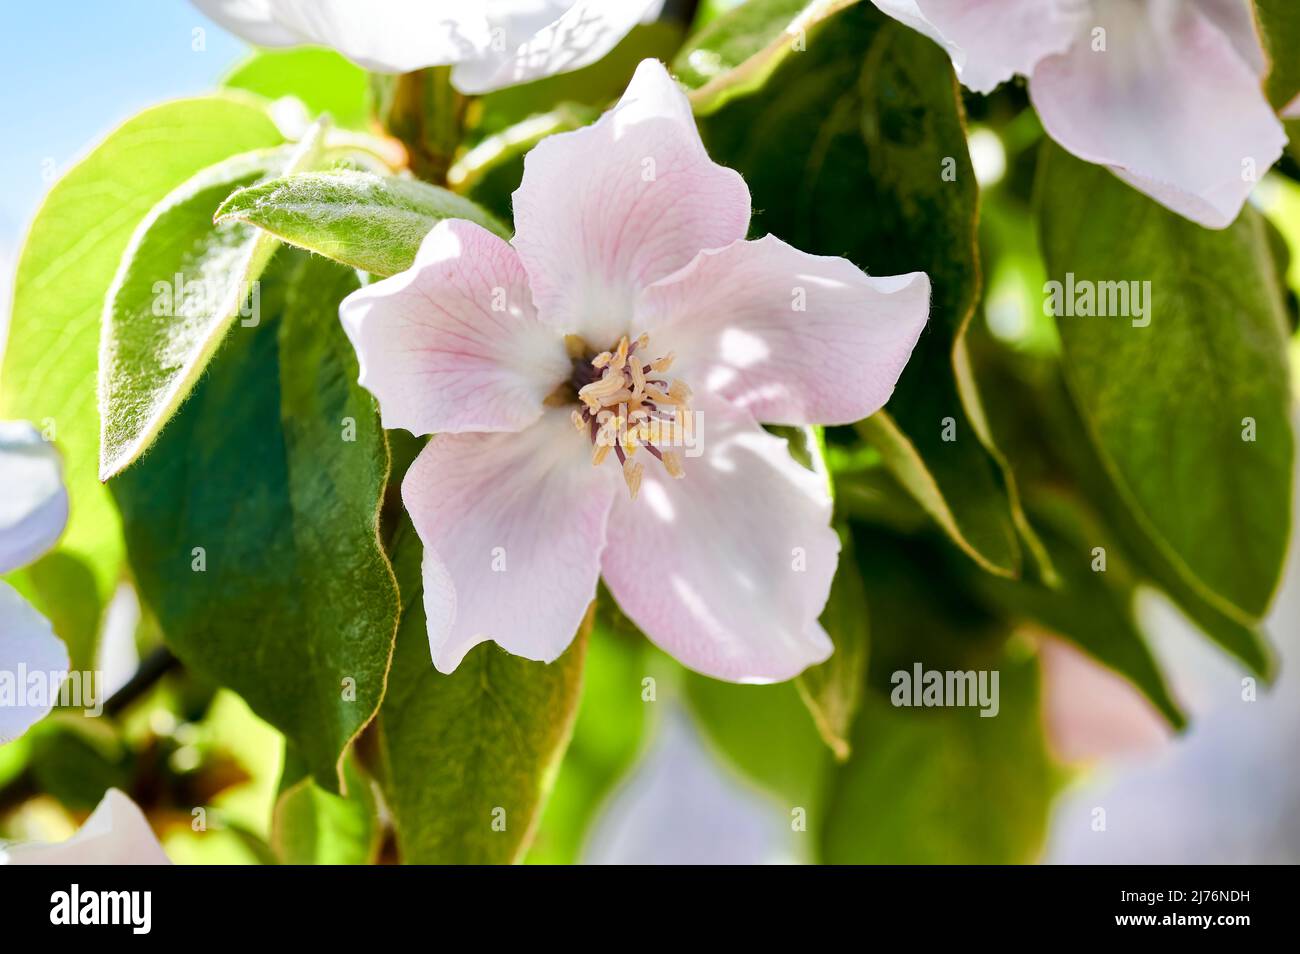 Primo piano di un fiore di mele cotogne, Cydonia oblunga, della famiglia Rosaceae con petali bianchi e rosa con filamenti allungati che terminano in antere bianche Foto Stock